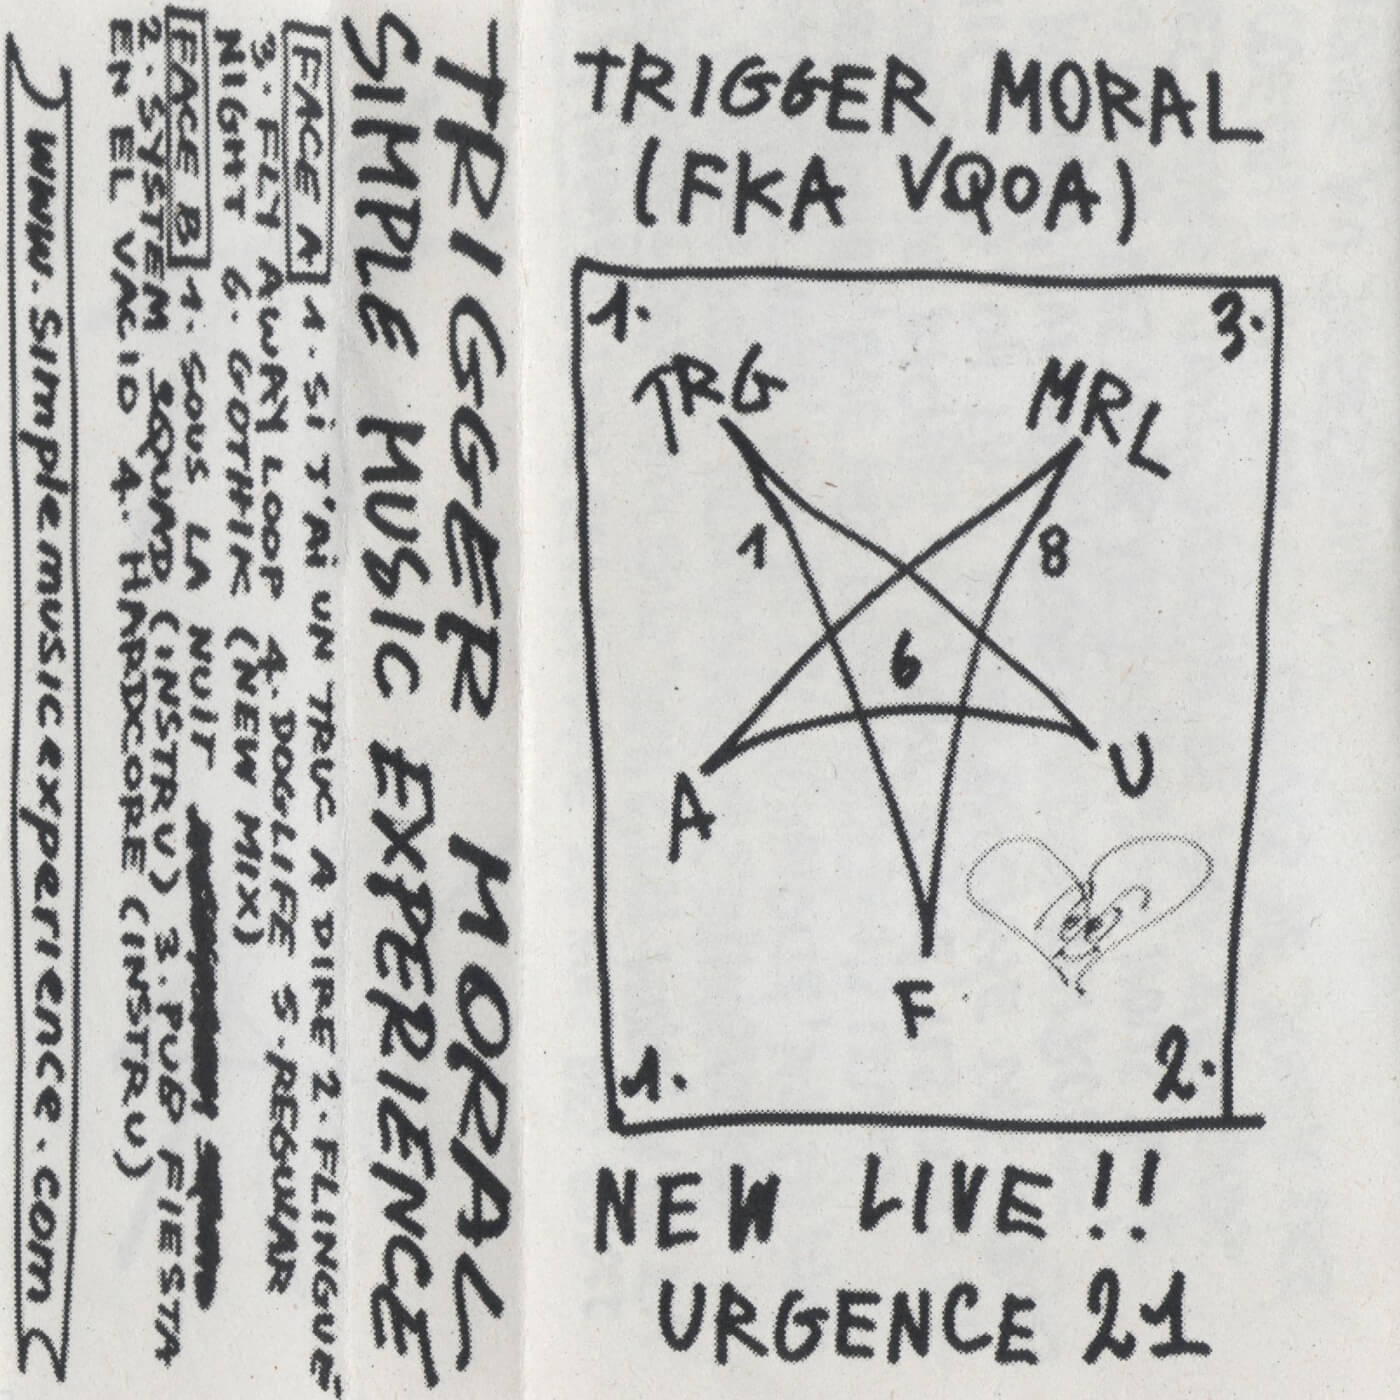 Trigger Moral - New Live​!​! Urgence 21